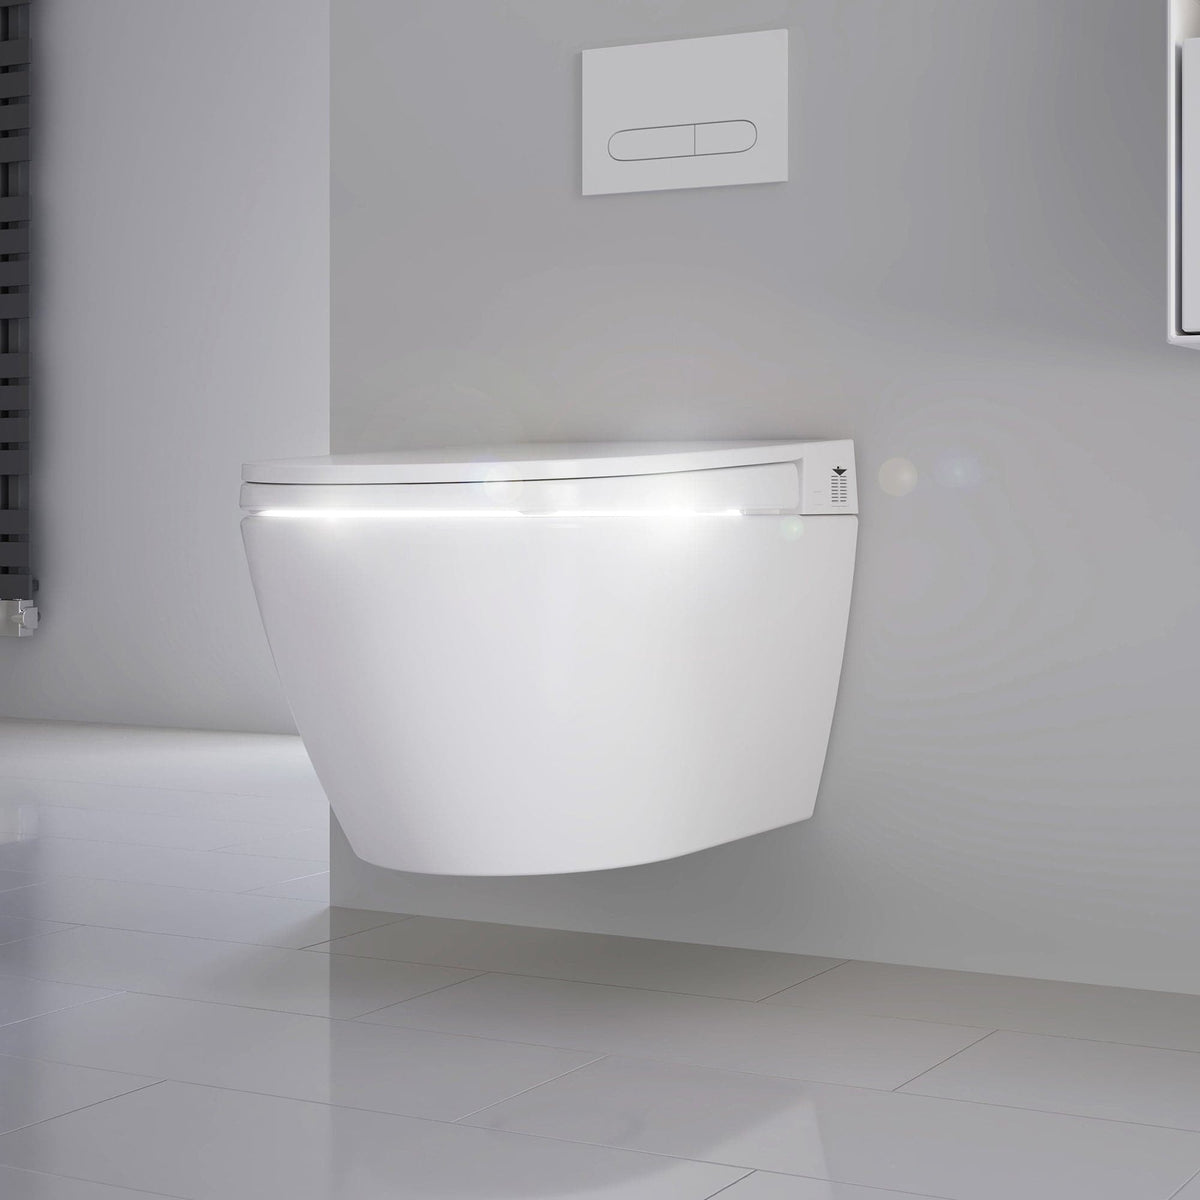 PuraMotion Ultra Dusch-WC mit UV-C Licht Desinfektion